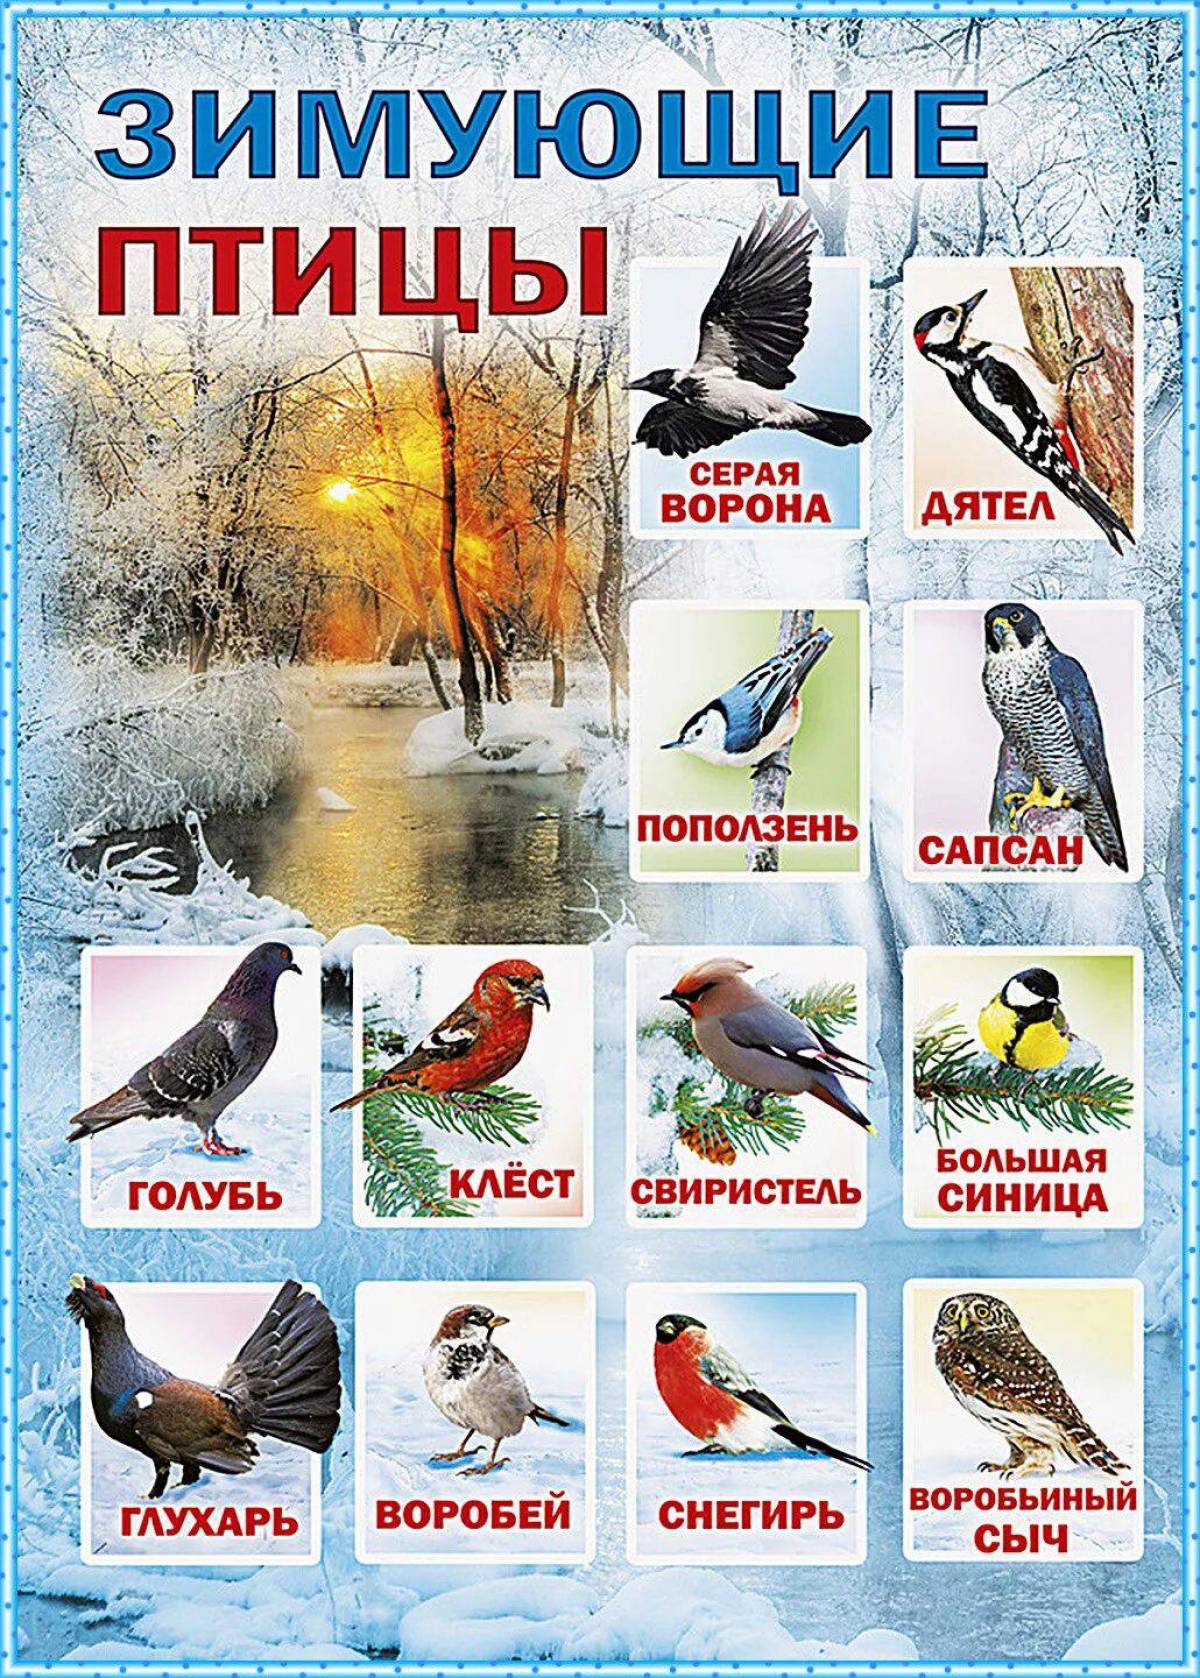 Зимующие птицы с названиями для детей #27